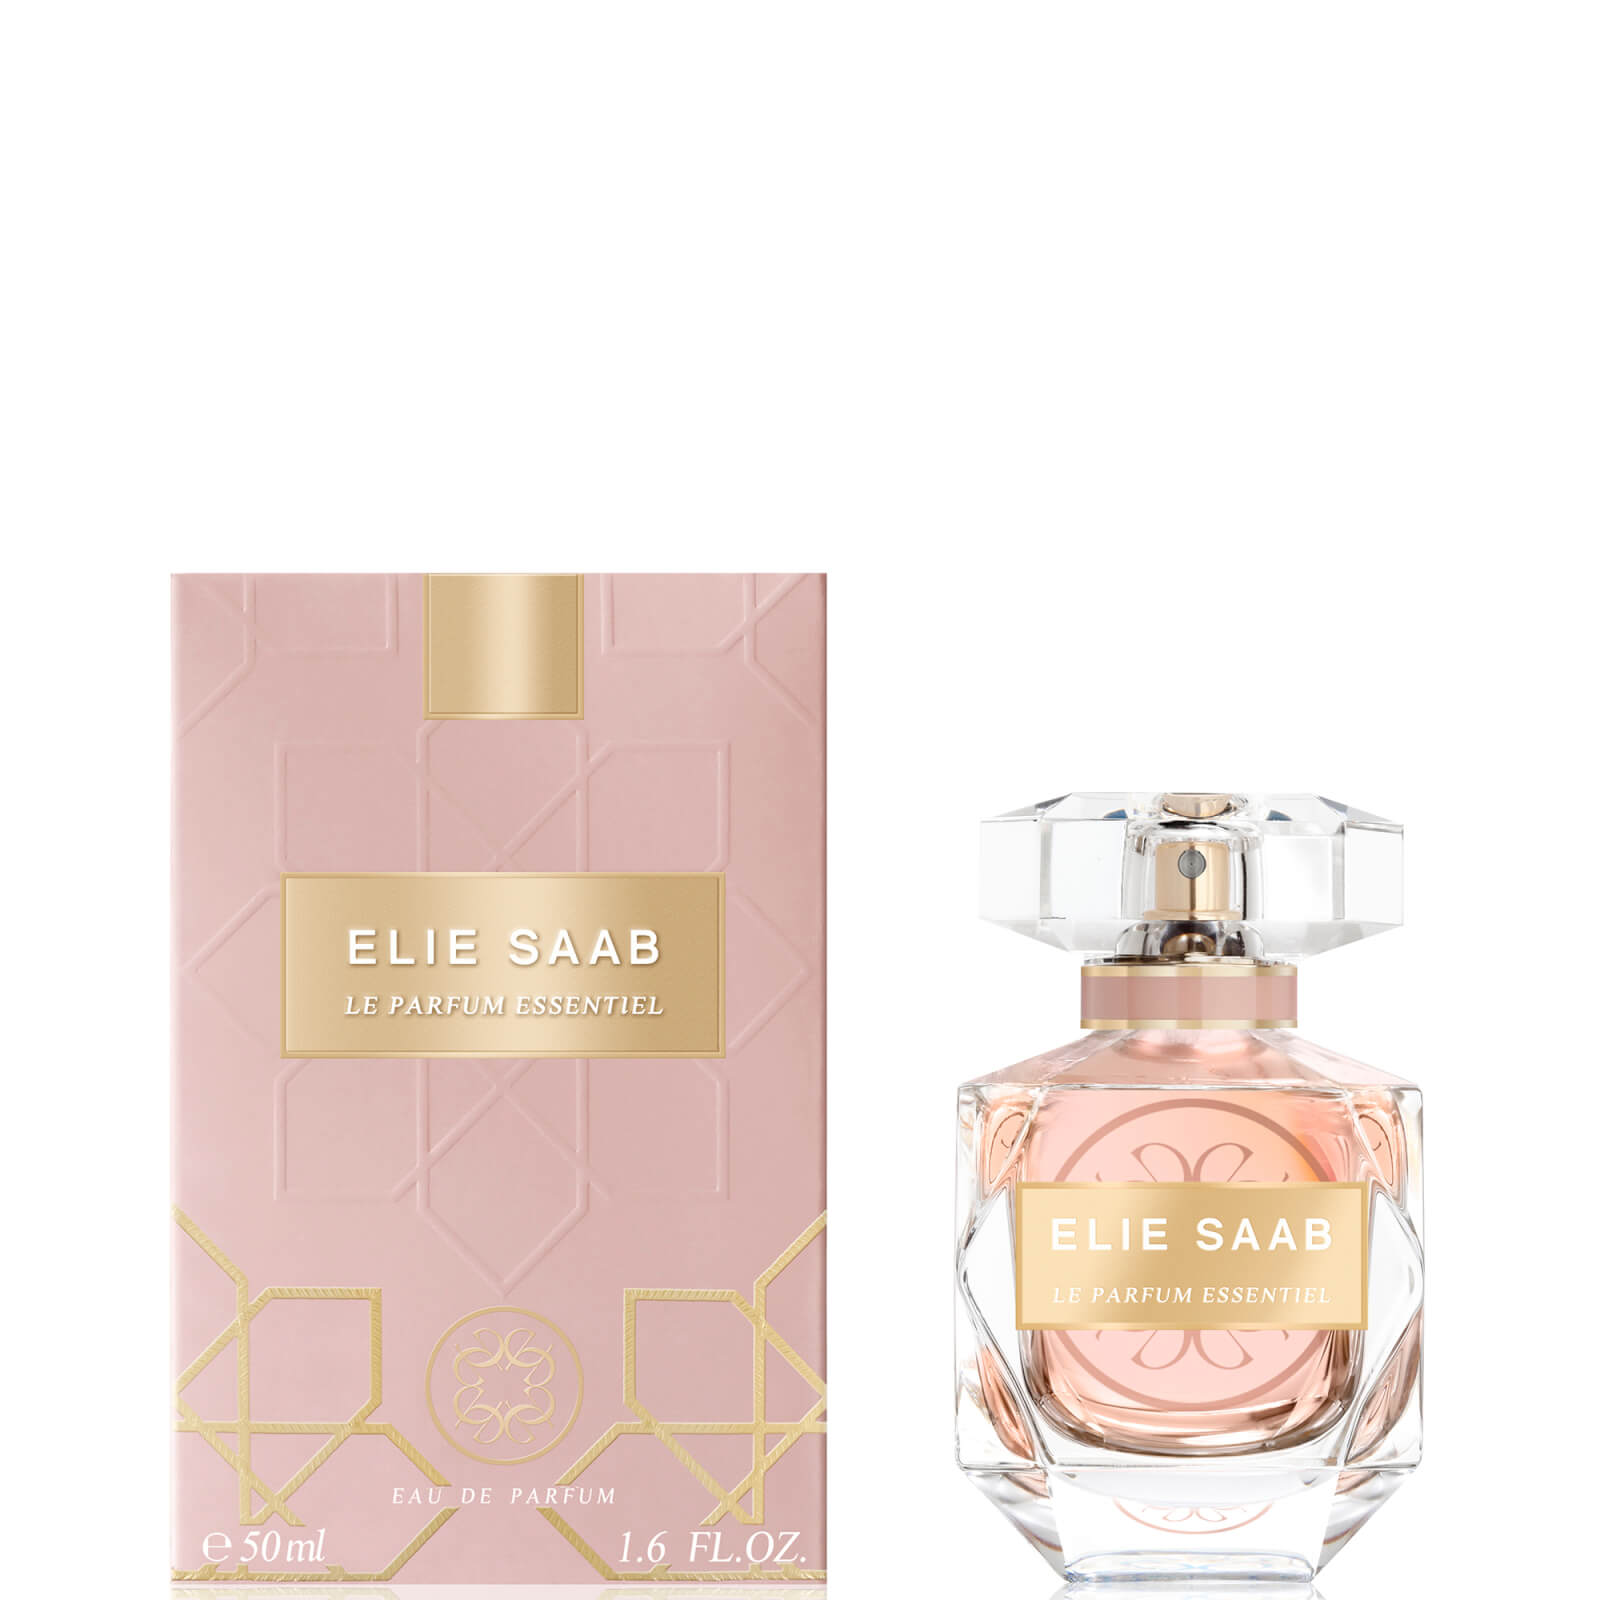 Image of Eau de Parfum Le Parfum Essentiel Elie Saab 50ml